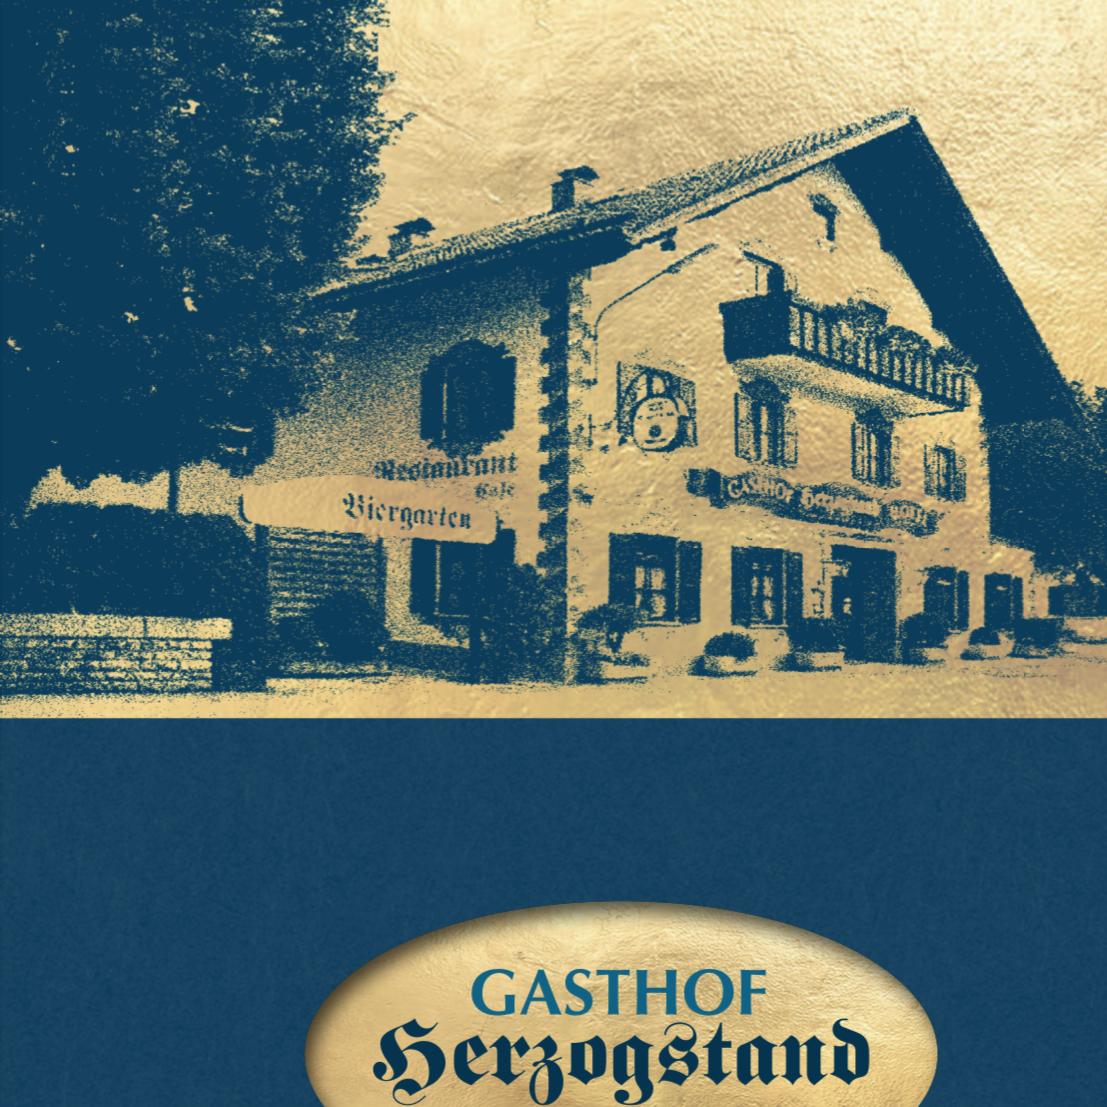 Restaurant "Gasthof Herzogstand bei Stefan" in Benediktbeuern